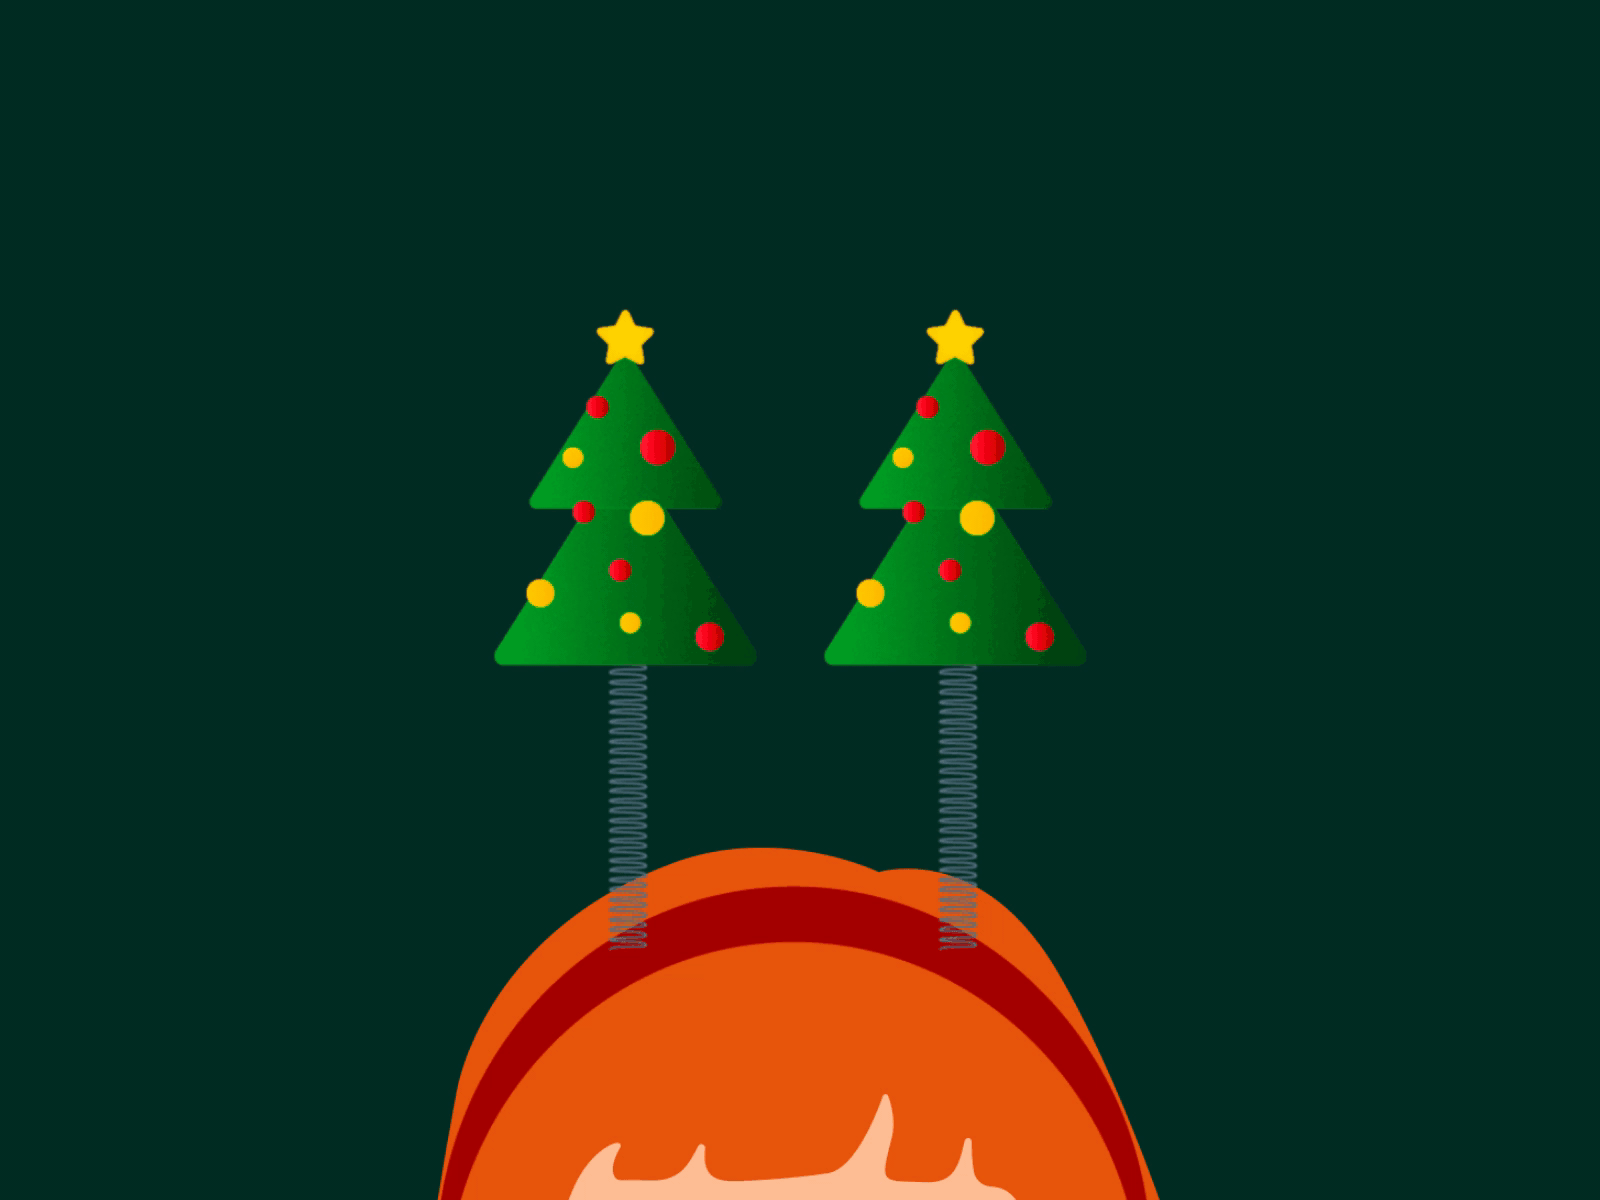 Happy Holidays 2danimation animated gif animation animation design christmas christmas tree dribbble holidays illustration merrychristmas mograph motion motion design motiongraphics santaclaus xmas